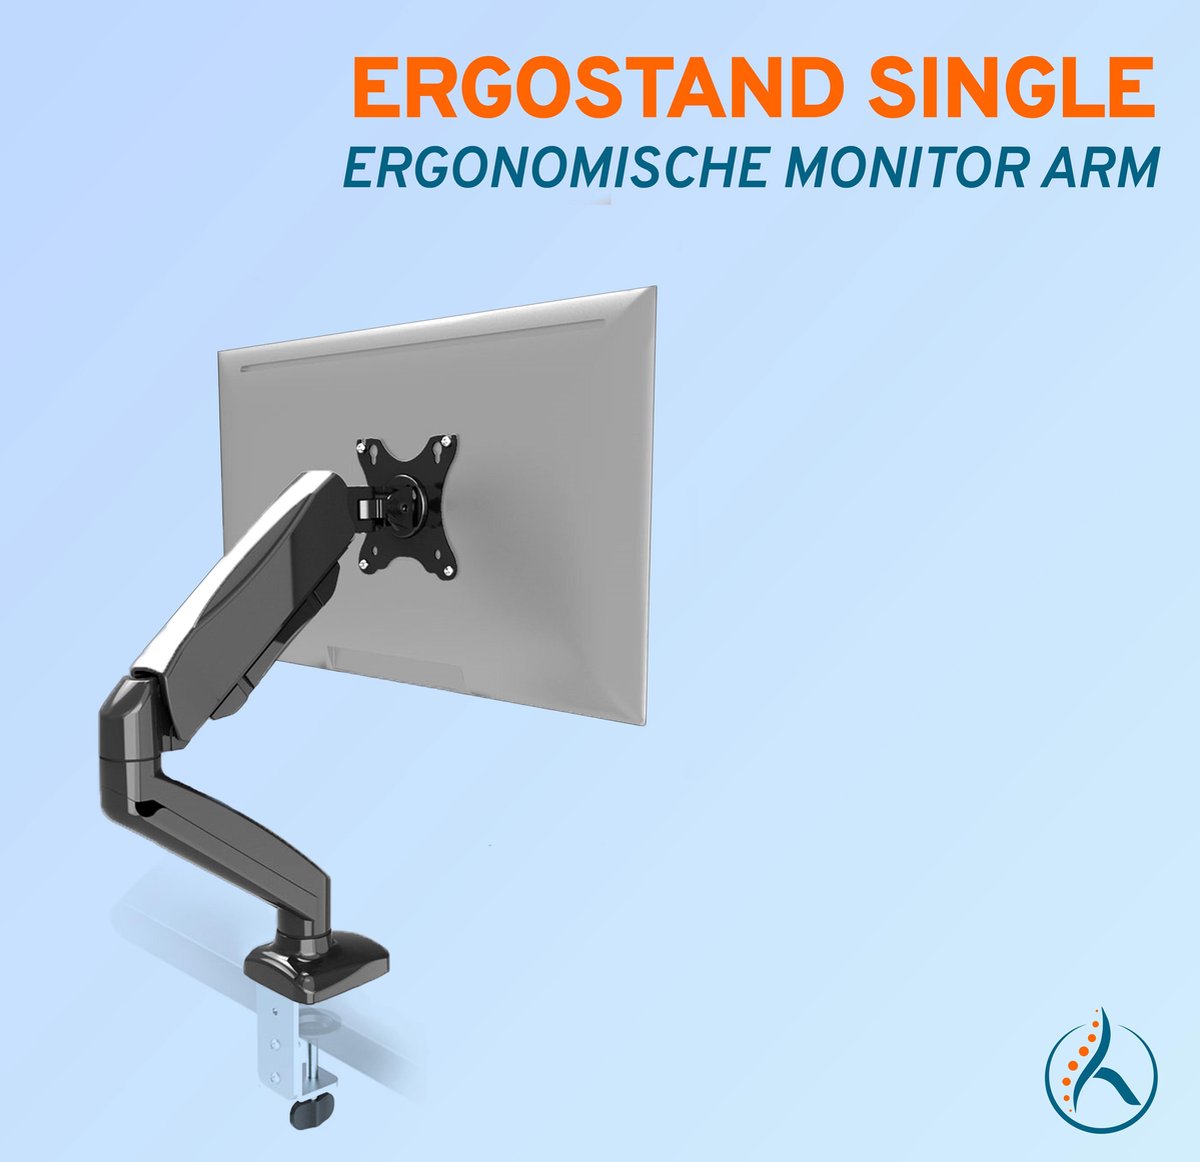 RIVO Ergonomics - ErgoStand Single | Ergonomische monitor arm met gasveer enkel scherm tot 8kg / 32